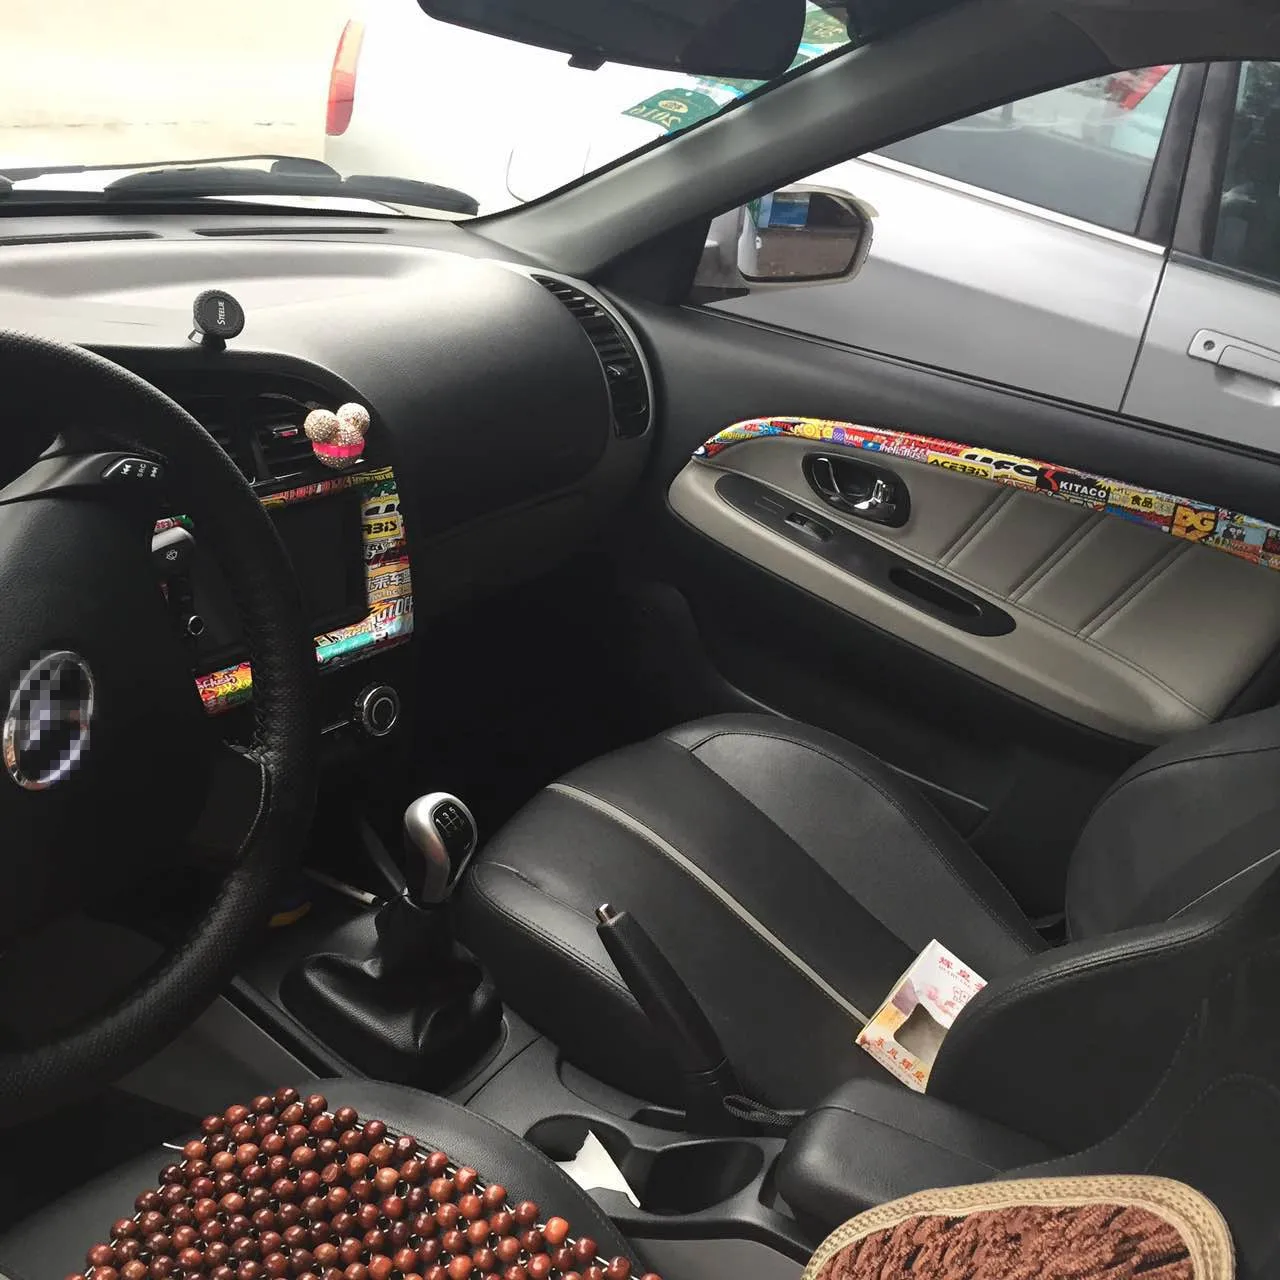 Глянцевая виниловая Автомобильная наклейка s и Переводные картинки JDM граффити наклейка бомба обёрточная бумага рулон на мотоцикл автомобиль Стайлинг для BMW VW Ford Toyota Honda